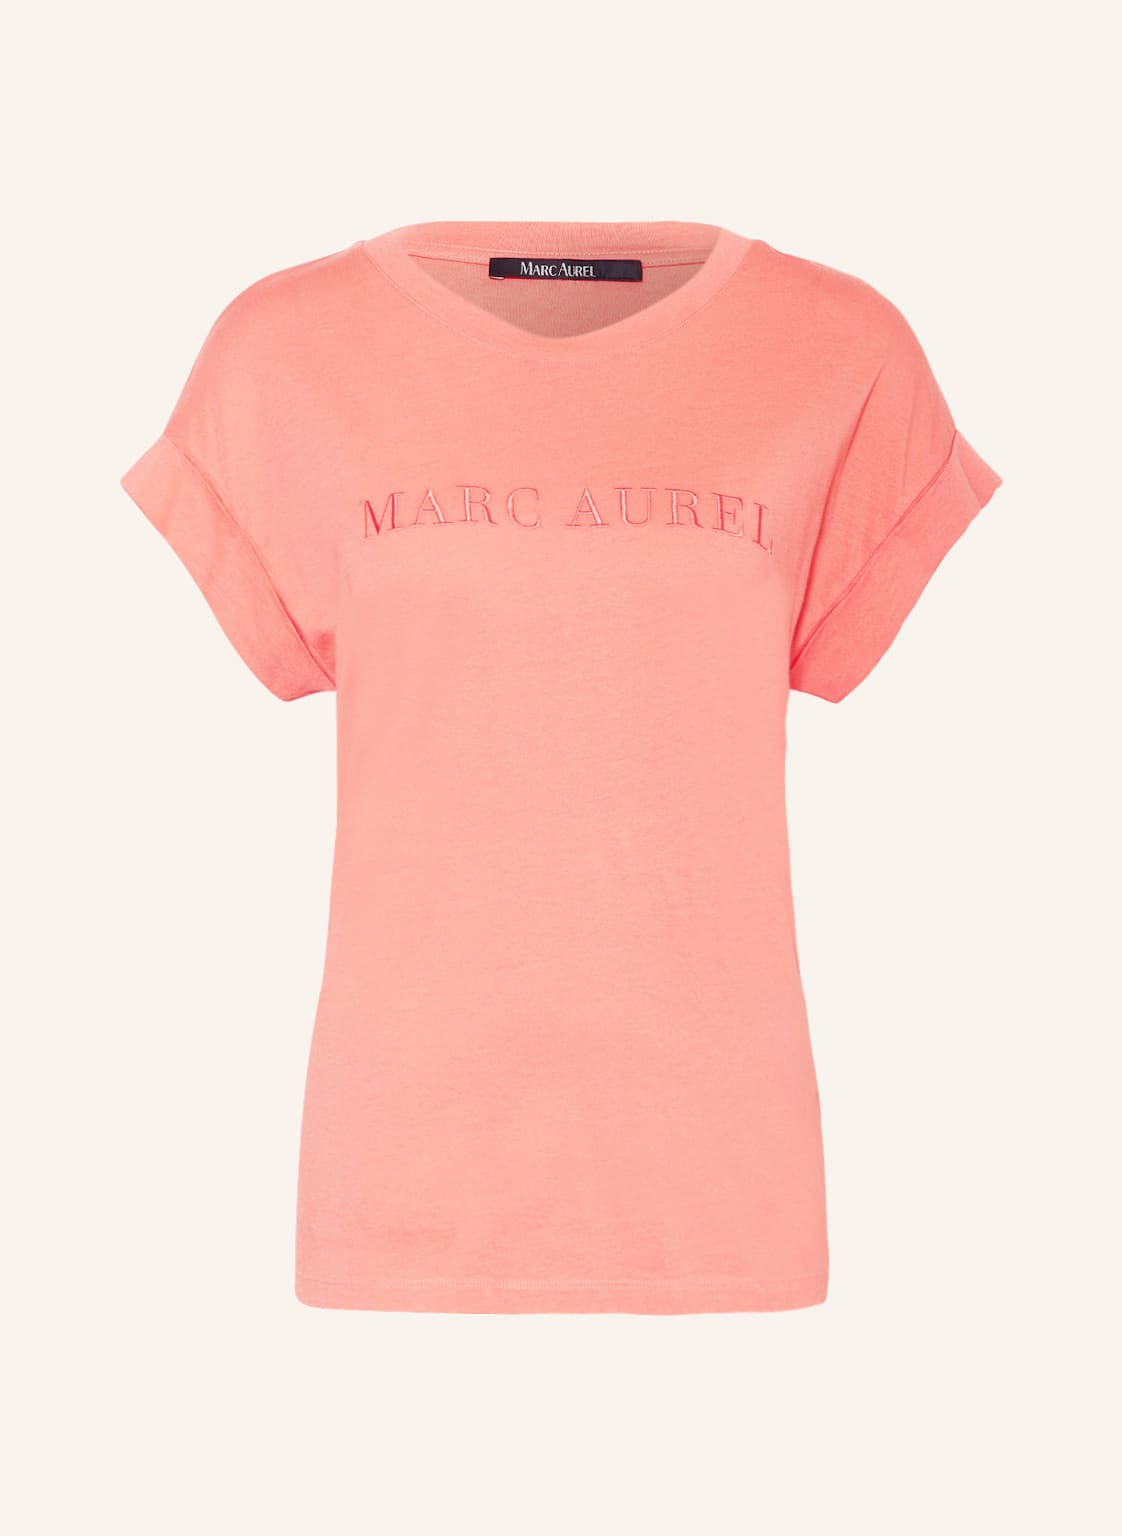 Marc Aurel T-Shirt rosa von MARC AUREL